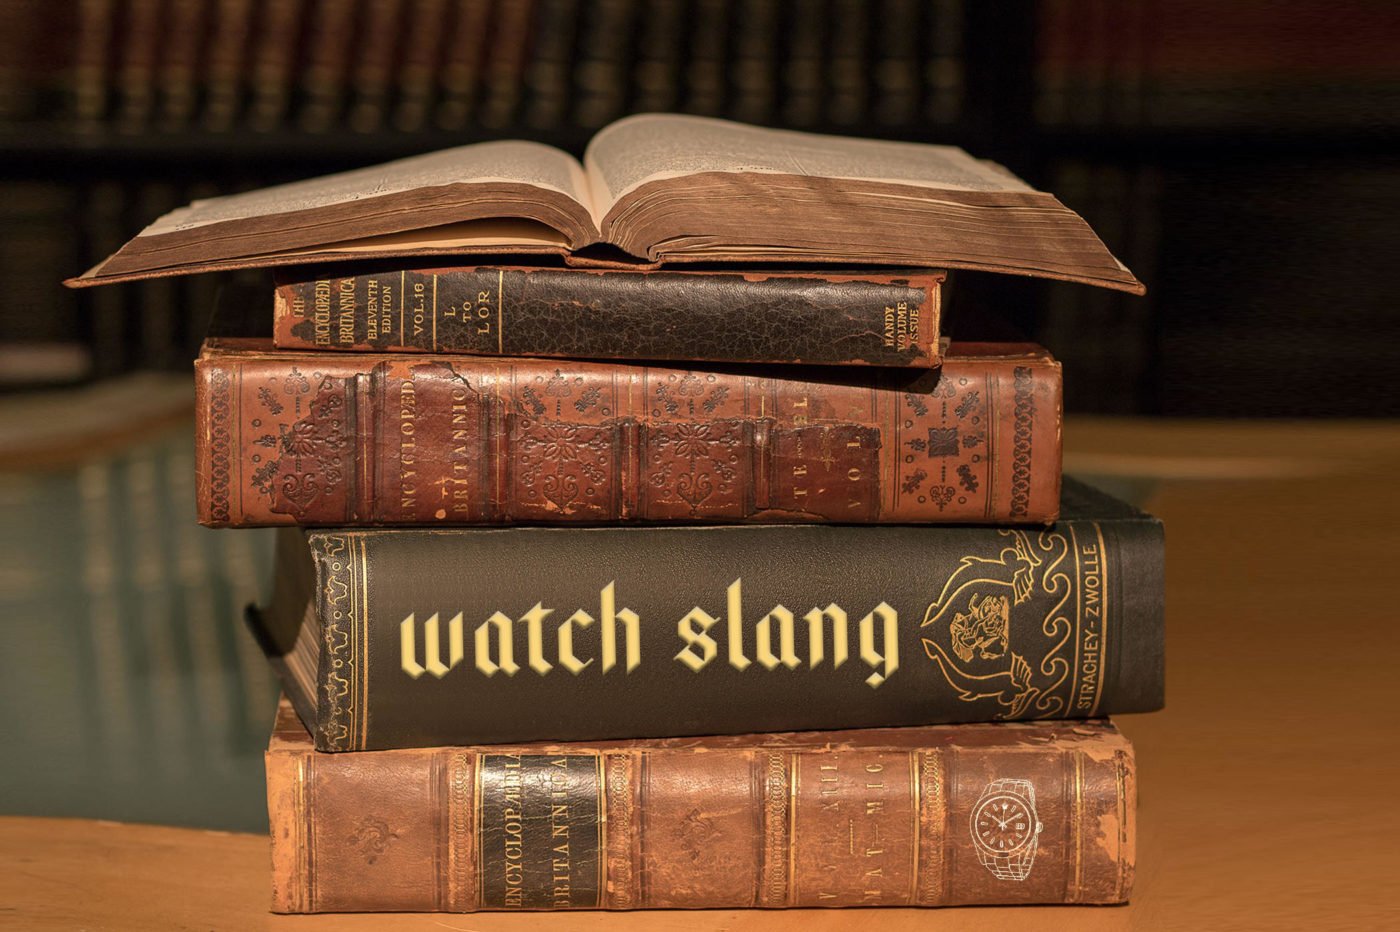 Watch slang